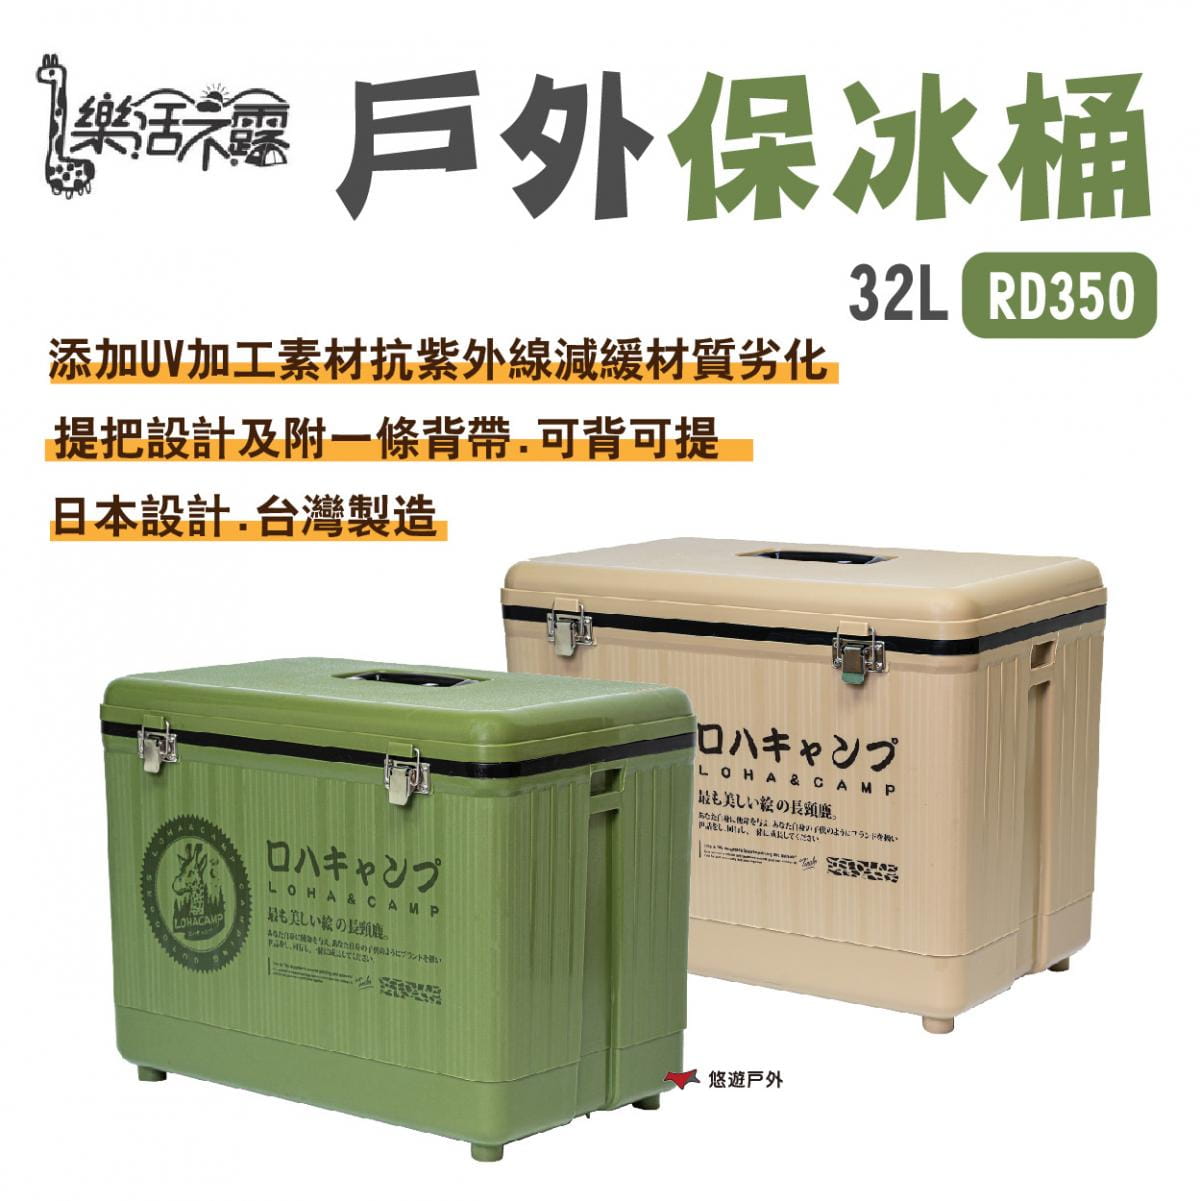 【樂活不露】戶外保冰桶 RD350 (悠遊戶外) 0